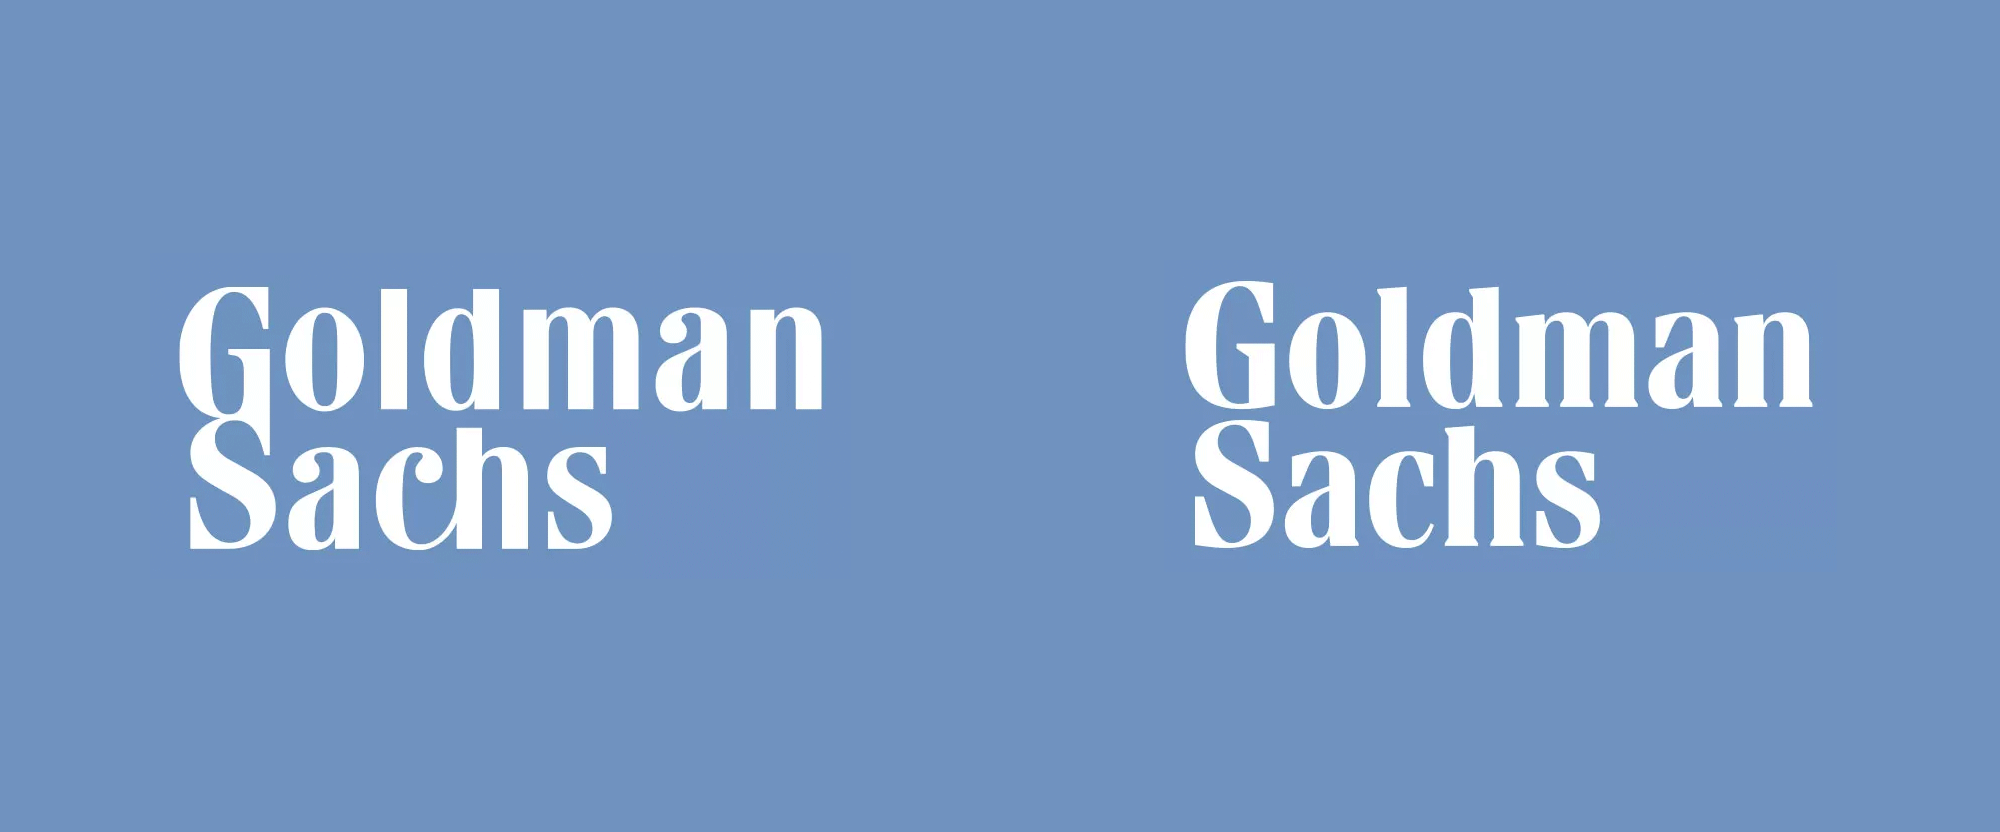 New Logo for Goldman Sachs